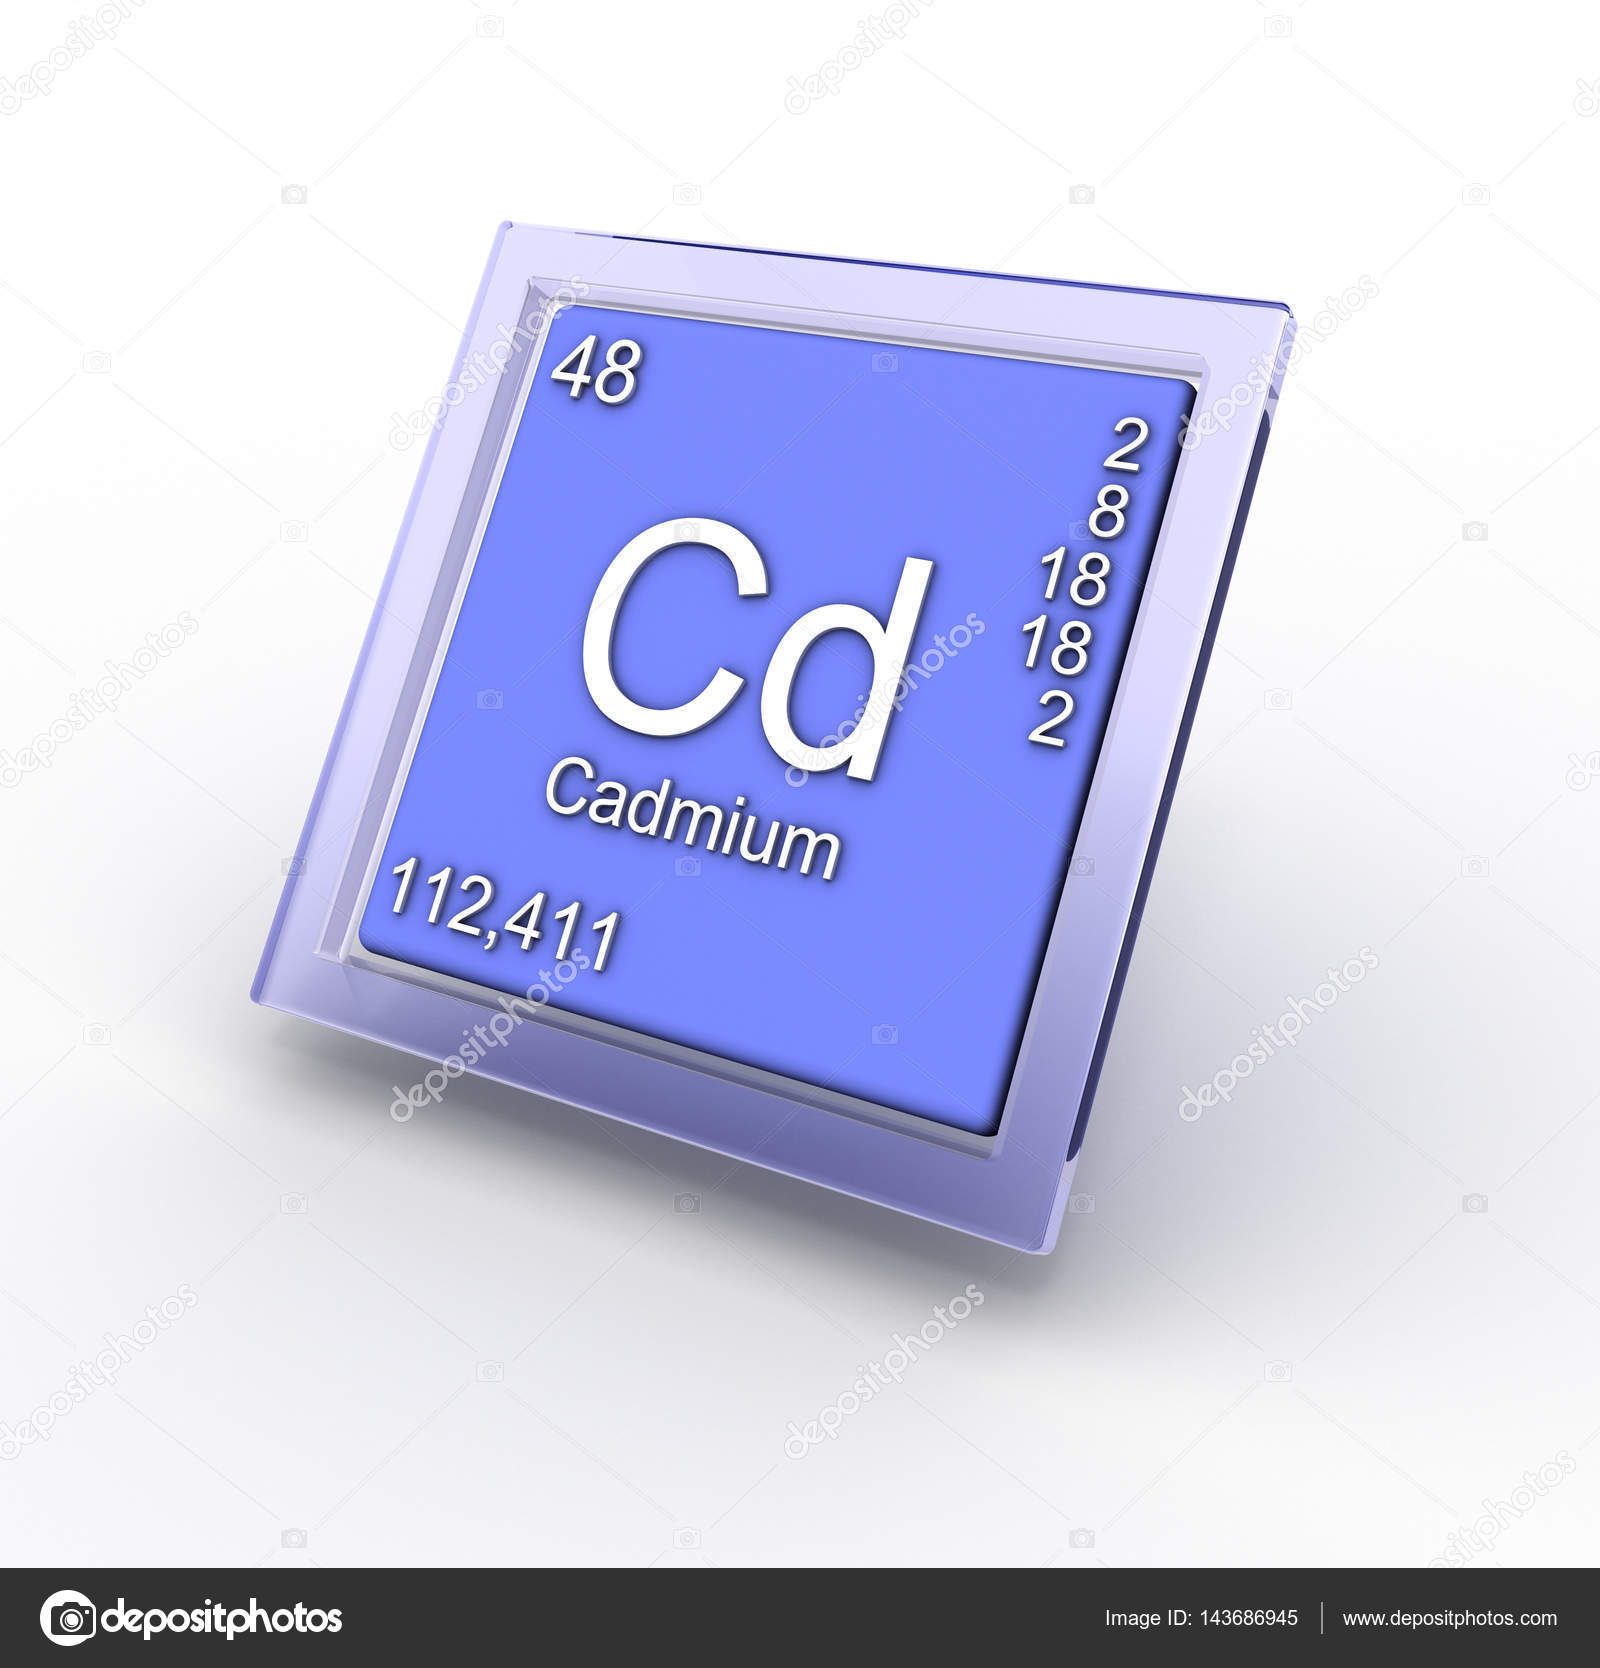 Кадмий символ элемента. Радий химический элемент. Радий фото химический элемент. AC химический элемент. Химический знак br.